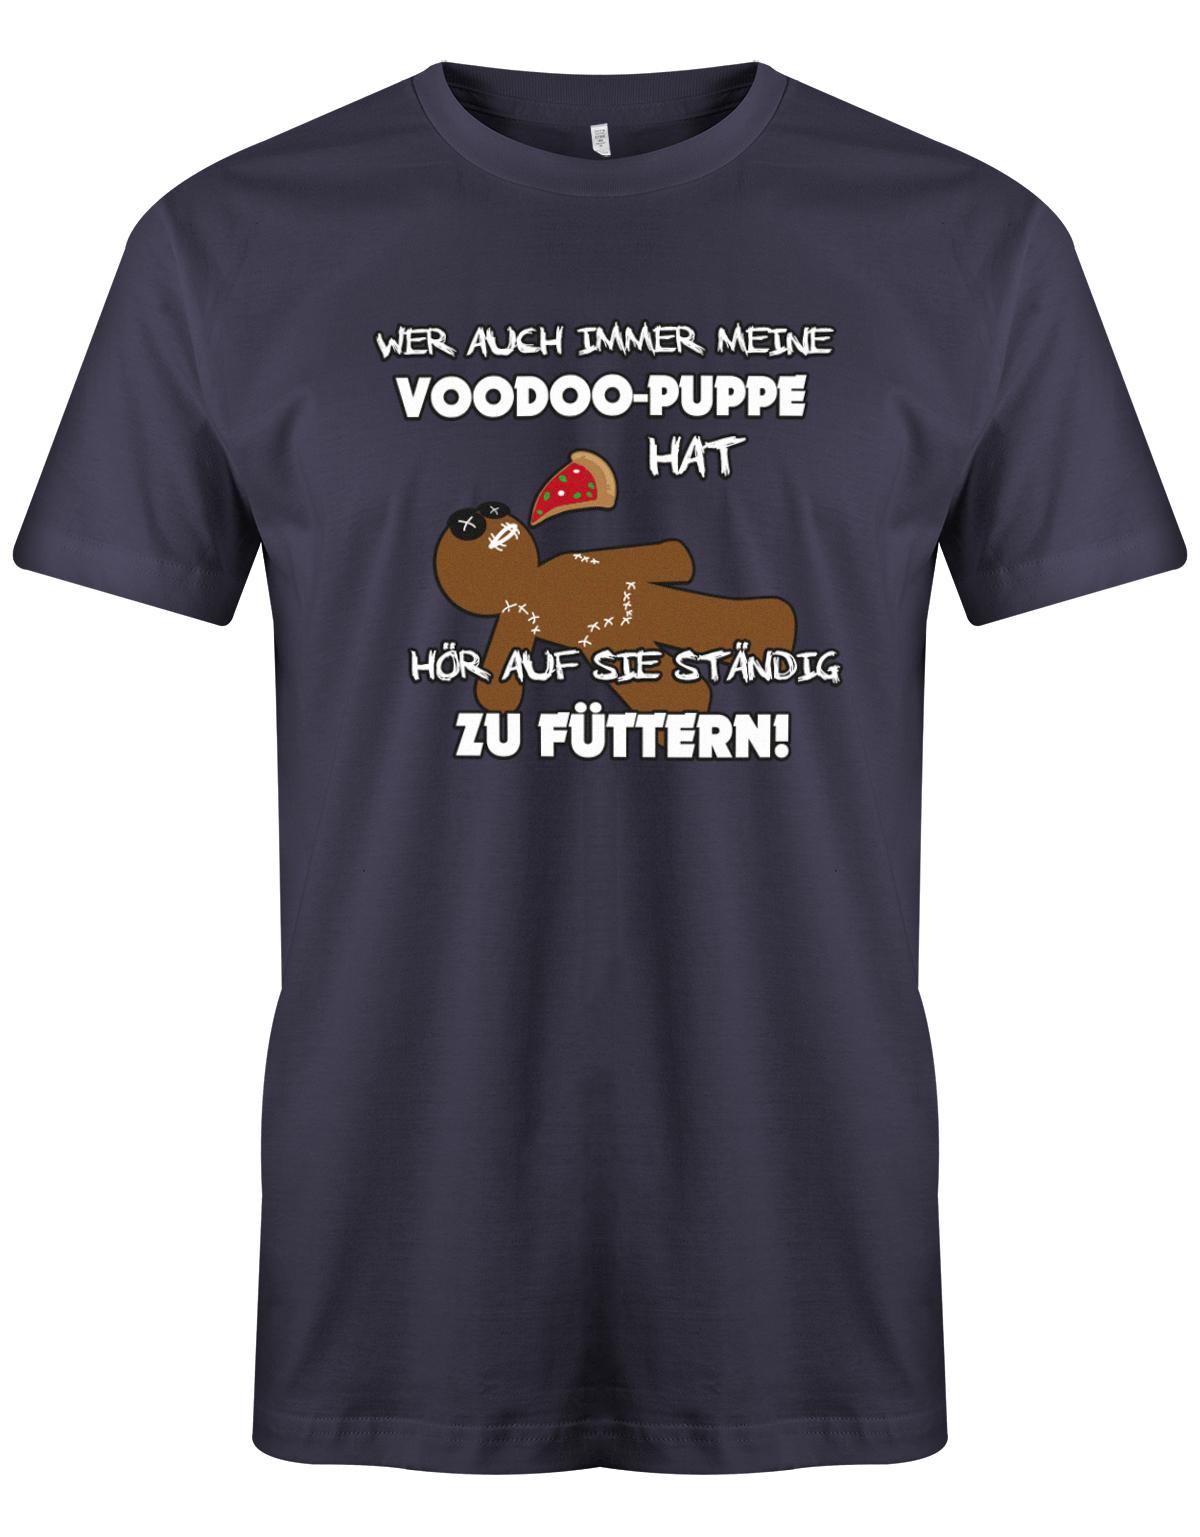 Wer auch immer meine Voodoo Puppe hat - nicht füttern - Sprüche Shirt  Herren Shirt Navy